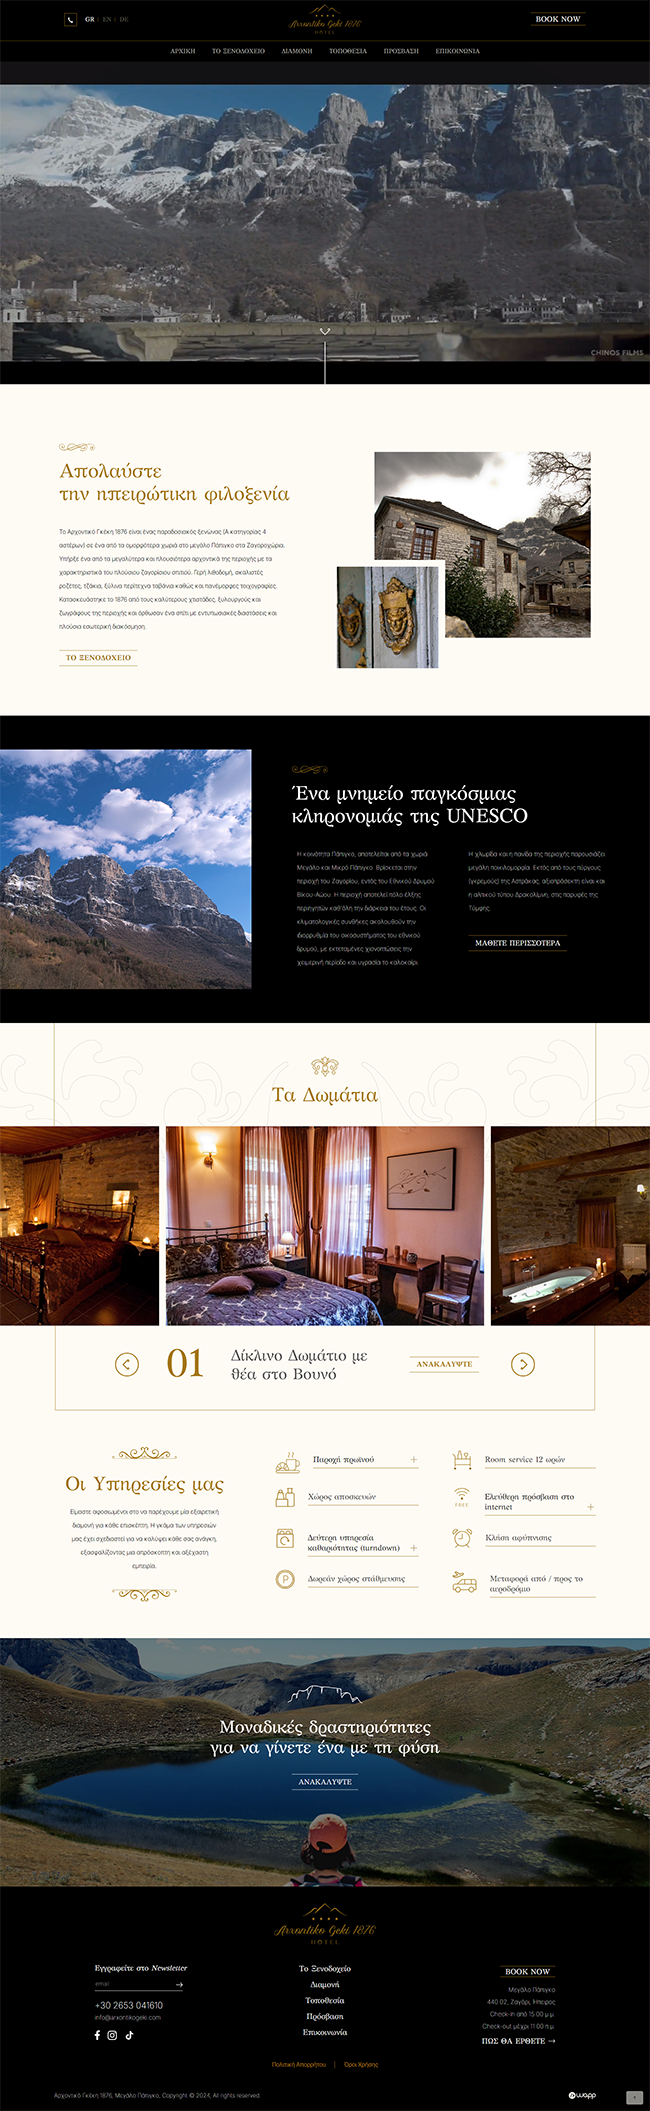 Κατασκευή responsive ιστοσελίδας για το Ξενοδοχείο Αρχοντɩκό Γκέκη 1876 στα Ζαγοροχώρια.